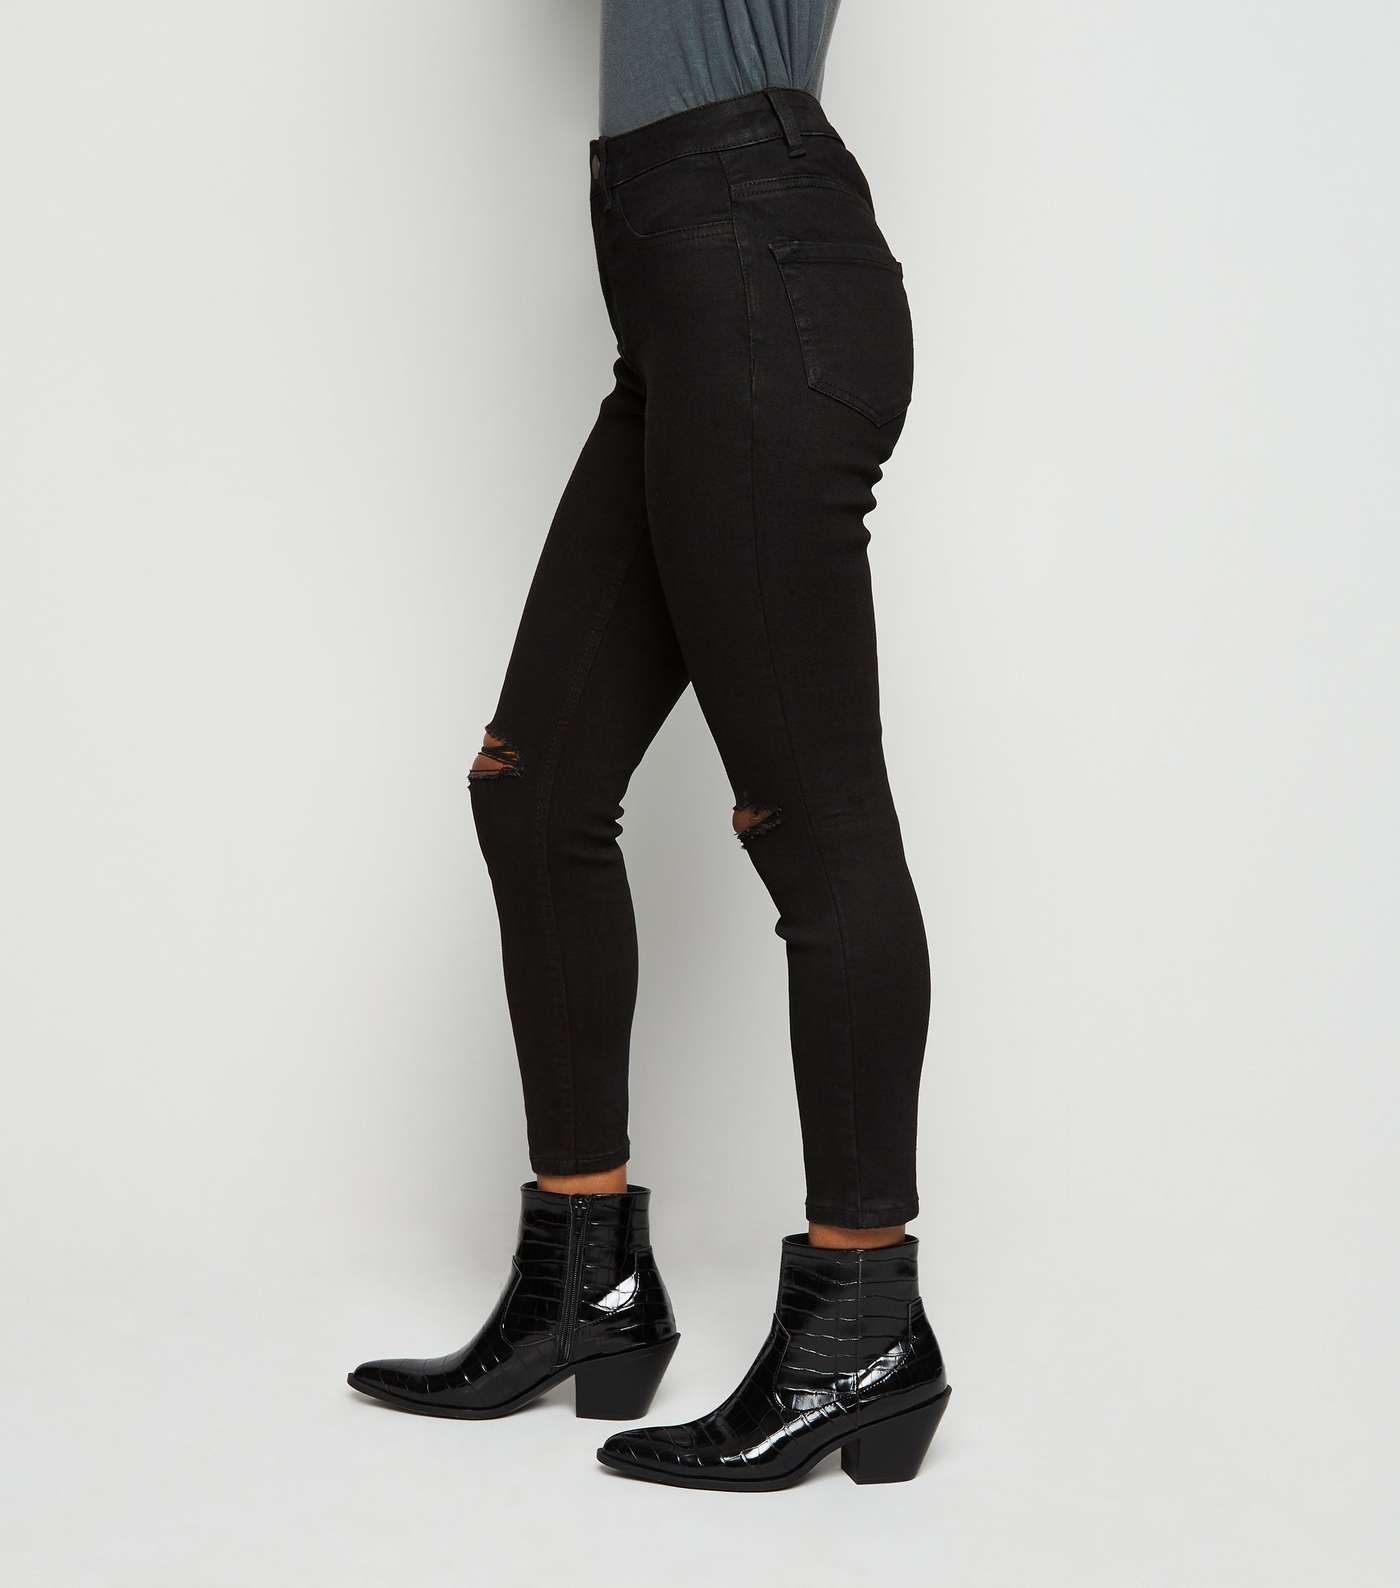 Petite Short Leg Black Ripped Jenna Skinny Jeans  Image 5